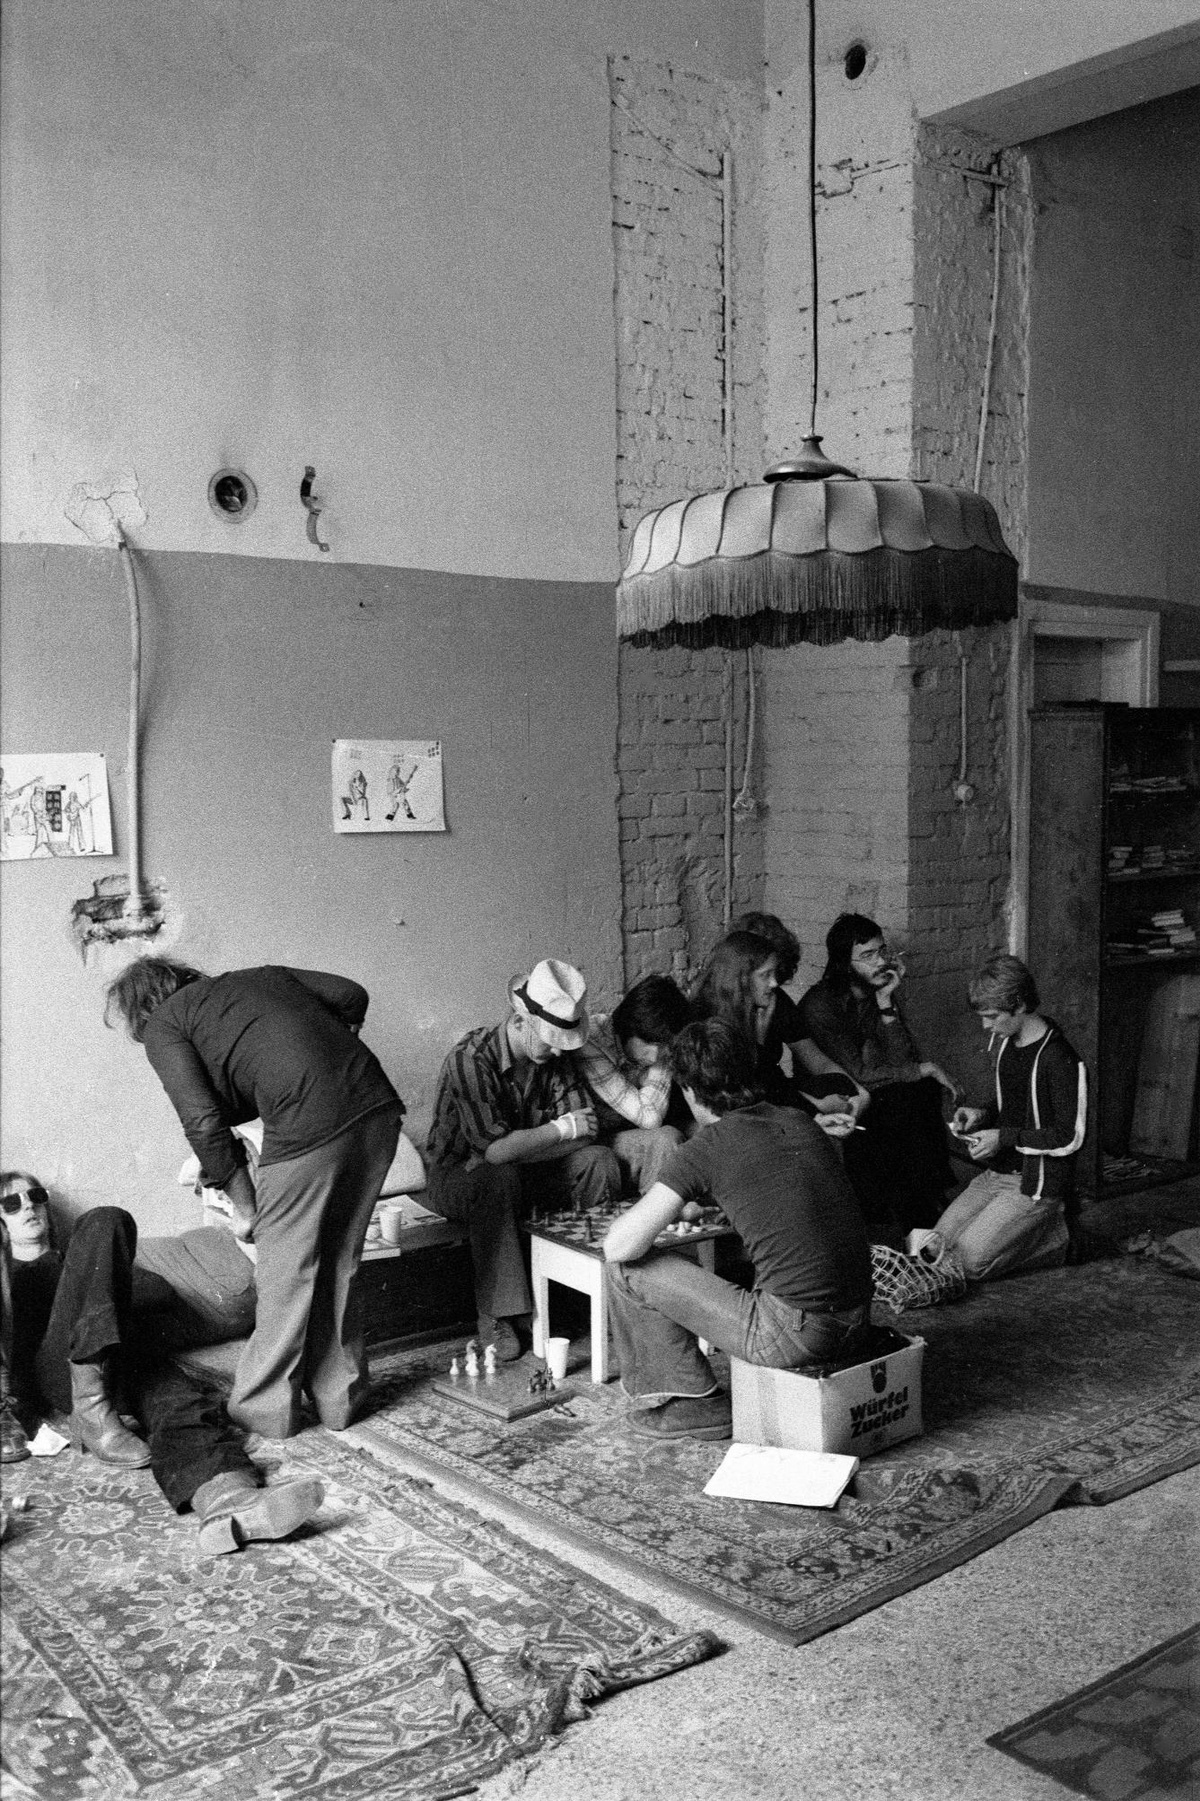 In einem Innenraum der Arena sitzen und liegen junge Menschen am Boden und auf Bierkisten. Der Boden ist mit Teppichen ausgelegt. Einige spielen Schach oder rauchen. Von der Decke hängt ein großer Lampenschirm.  © Heinz Riedler, Wien Museum. 